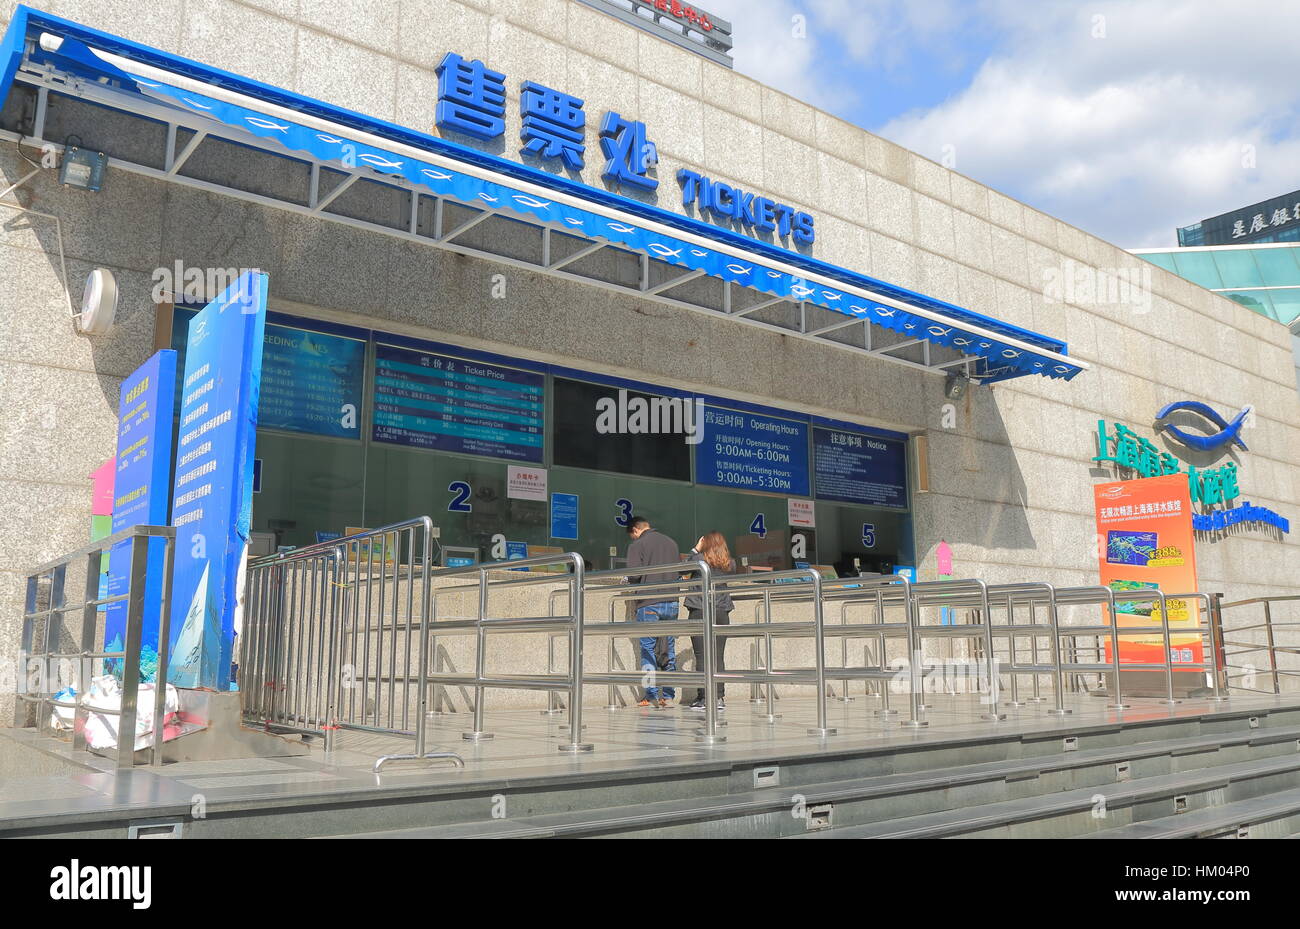 Personnes visitent Shanghai Ocean Aquarium de Shanghai en Chine. Shanghai Ocean Aquarium a l'un des plus longs tunnels sous-marins dans le monde. Banque D'Images